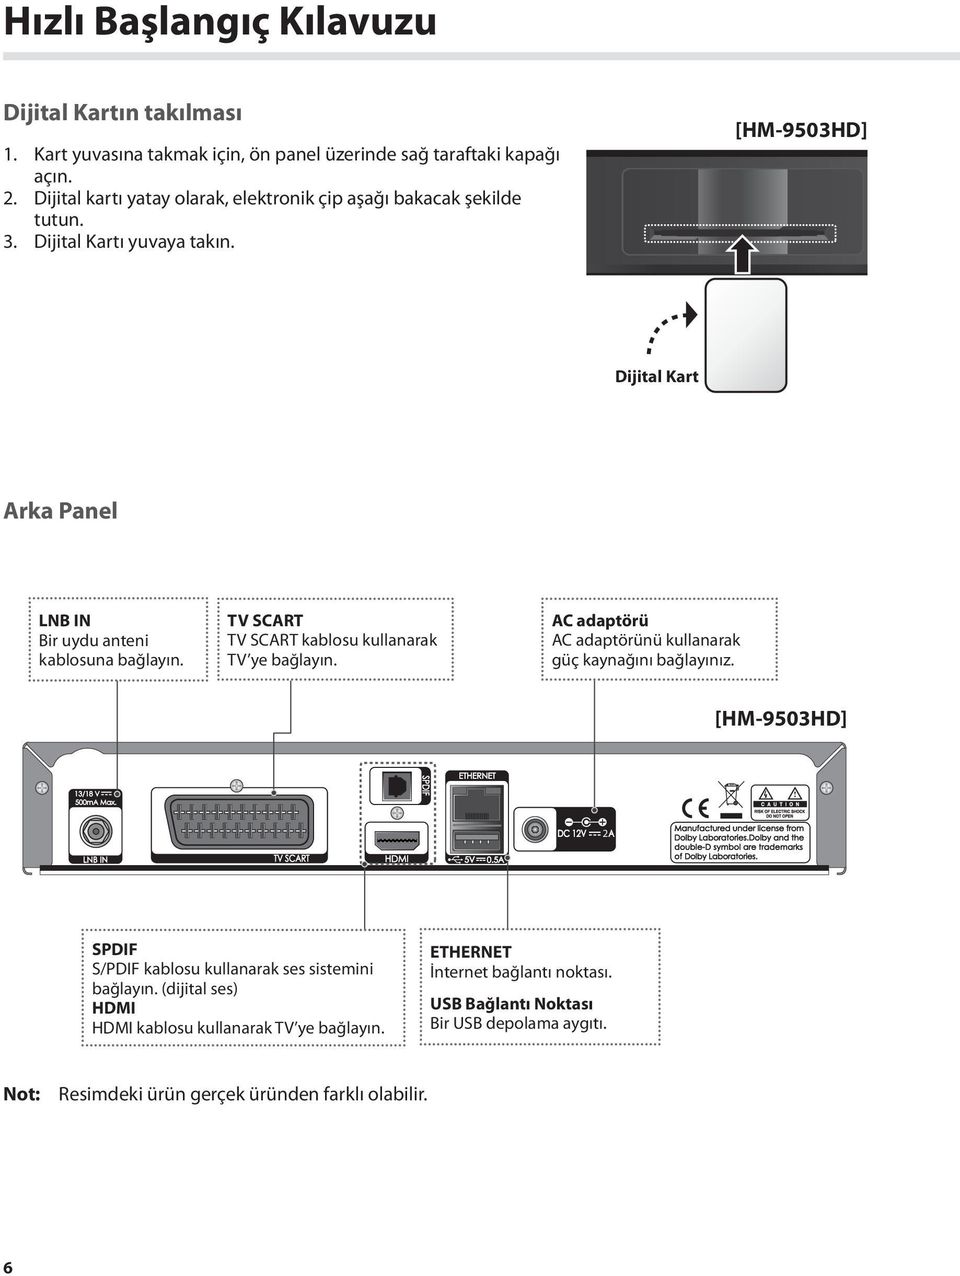 [HM-9503HD] Dijital Kart Arka Panel LNB IN Bir uydu anteni kablosuna bağlayın. TV SCART TV SCART kablosu kullanarak TV ye bağlayın.